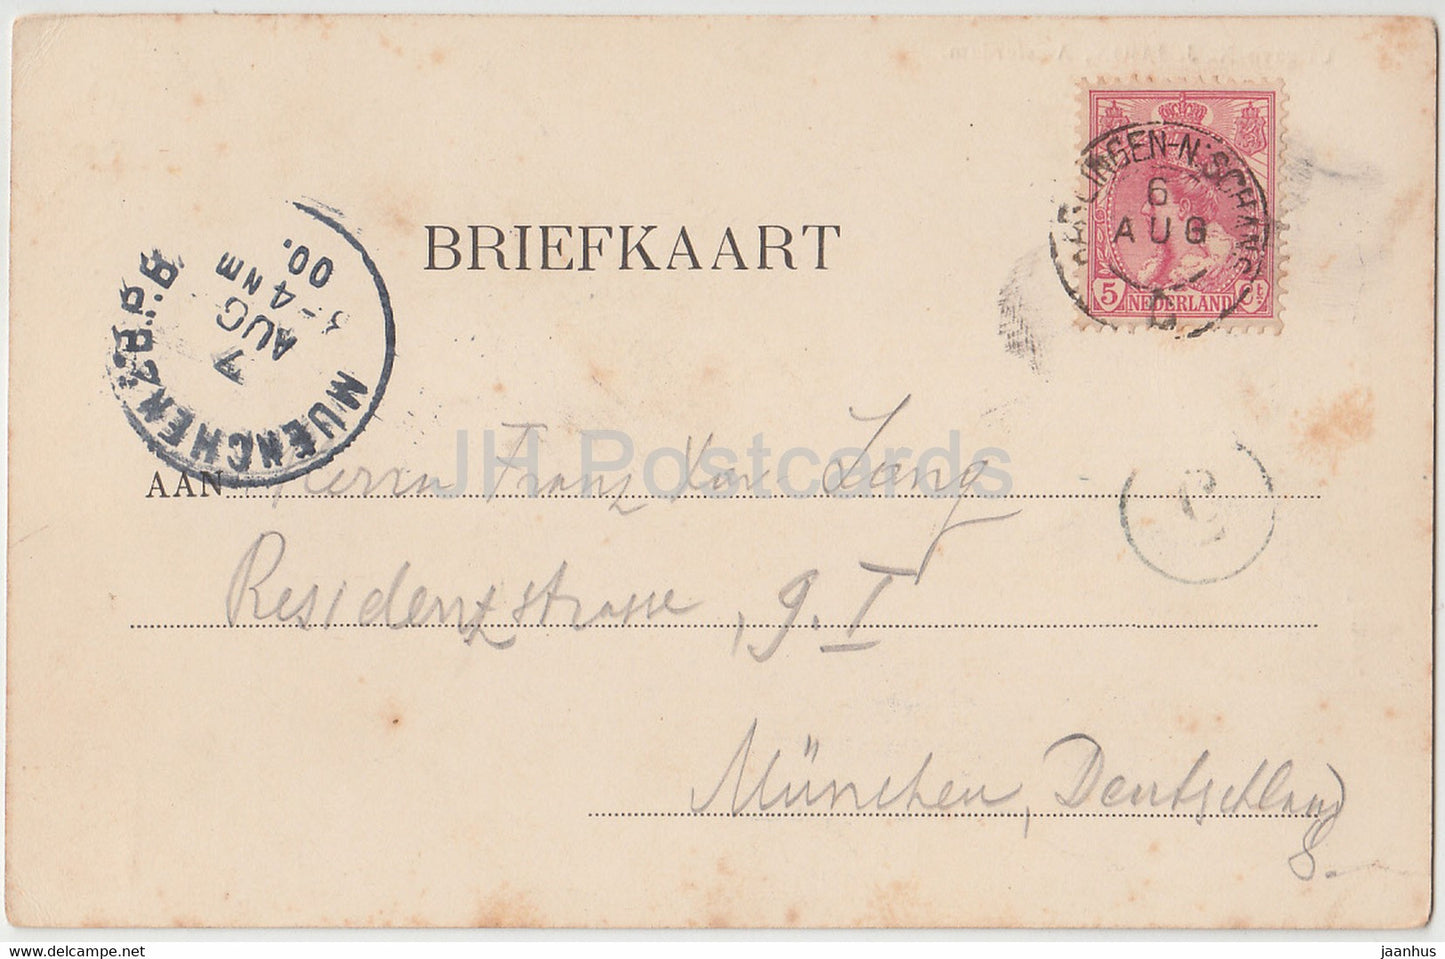 Amsterdam - Molen bij het oude Funen - Windmühle - alte Postkarte - 1900 - Niederlande - gebraucht